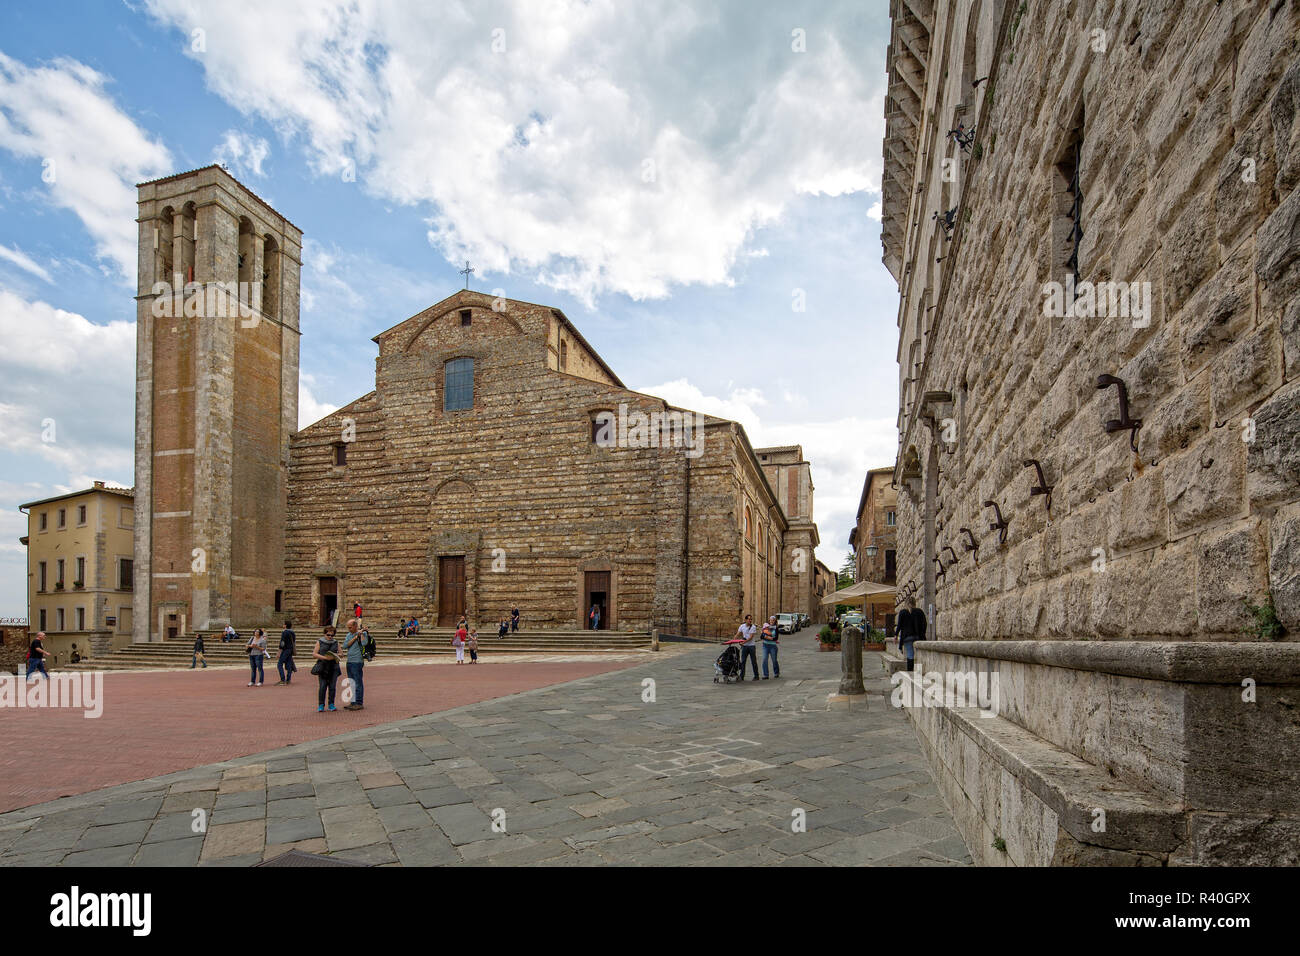 Los turistas de la plaza. En el punto más alto de la ciudad de Montepulciano se encuentra el Duomo, bautizado con el nombre de Santa Maria Assunta, Toscana, Italia Foto de stock